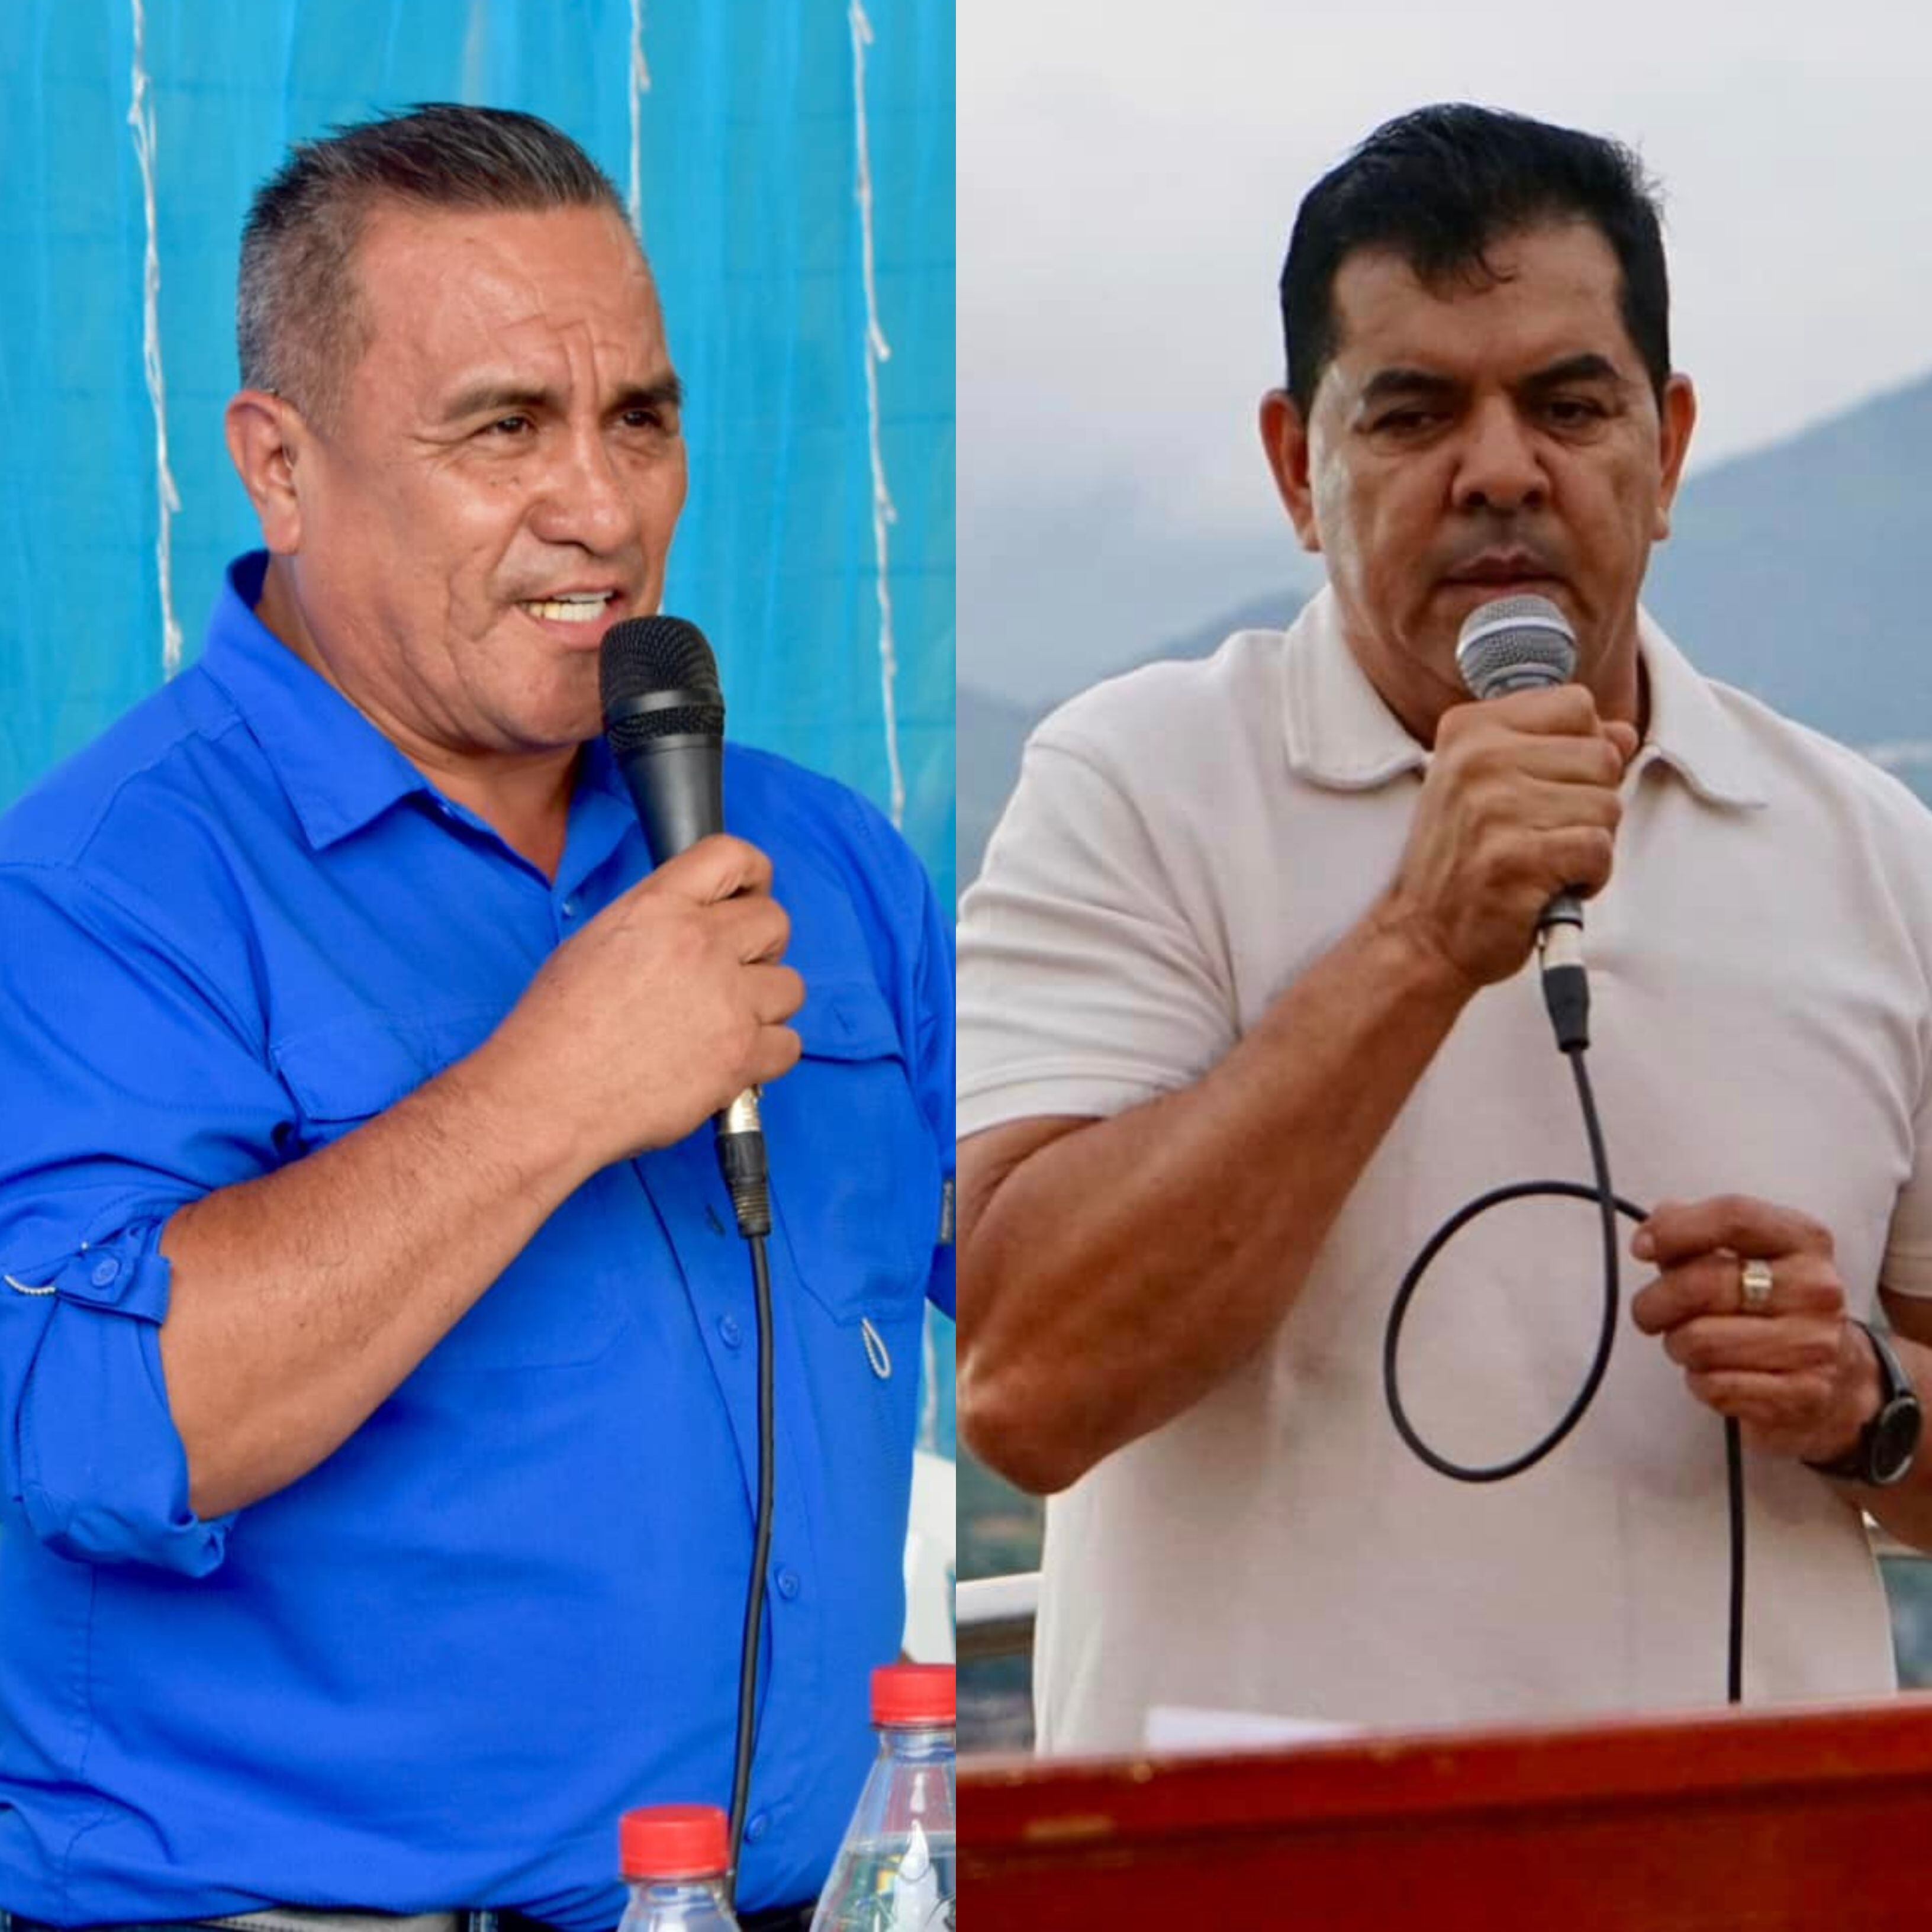 Asesinato de alcaldes de Camilo Ponce Enríquez y Portovelo muestra el ‘control del crimen organizado’ en estos poblados dedicados a la minería, según experto